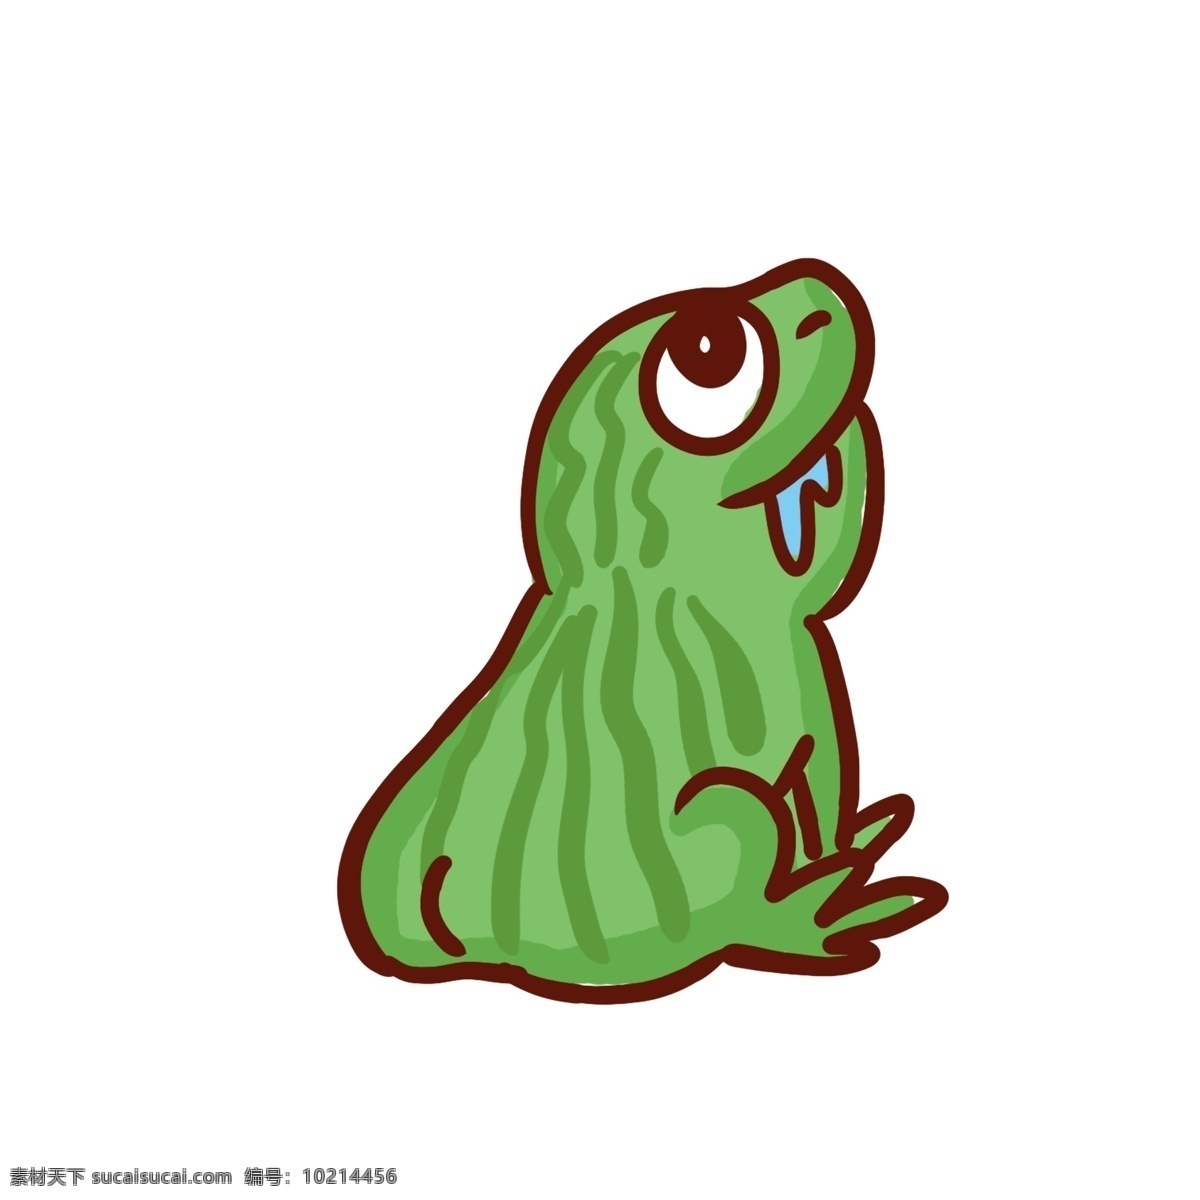 彩绘 只 青蛙 动物 元素 插画 荷塘 漫画